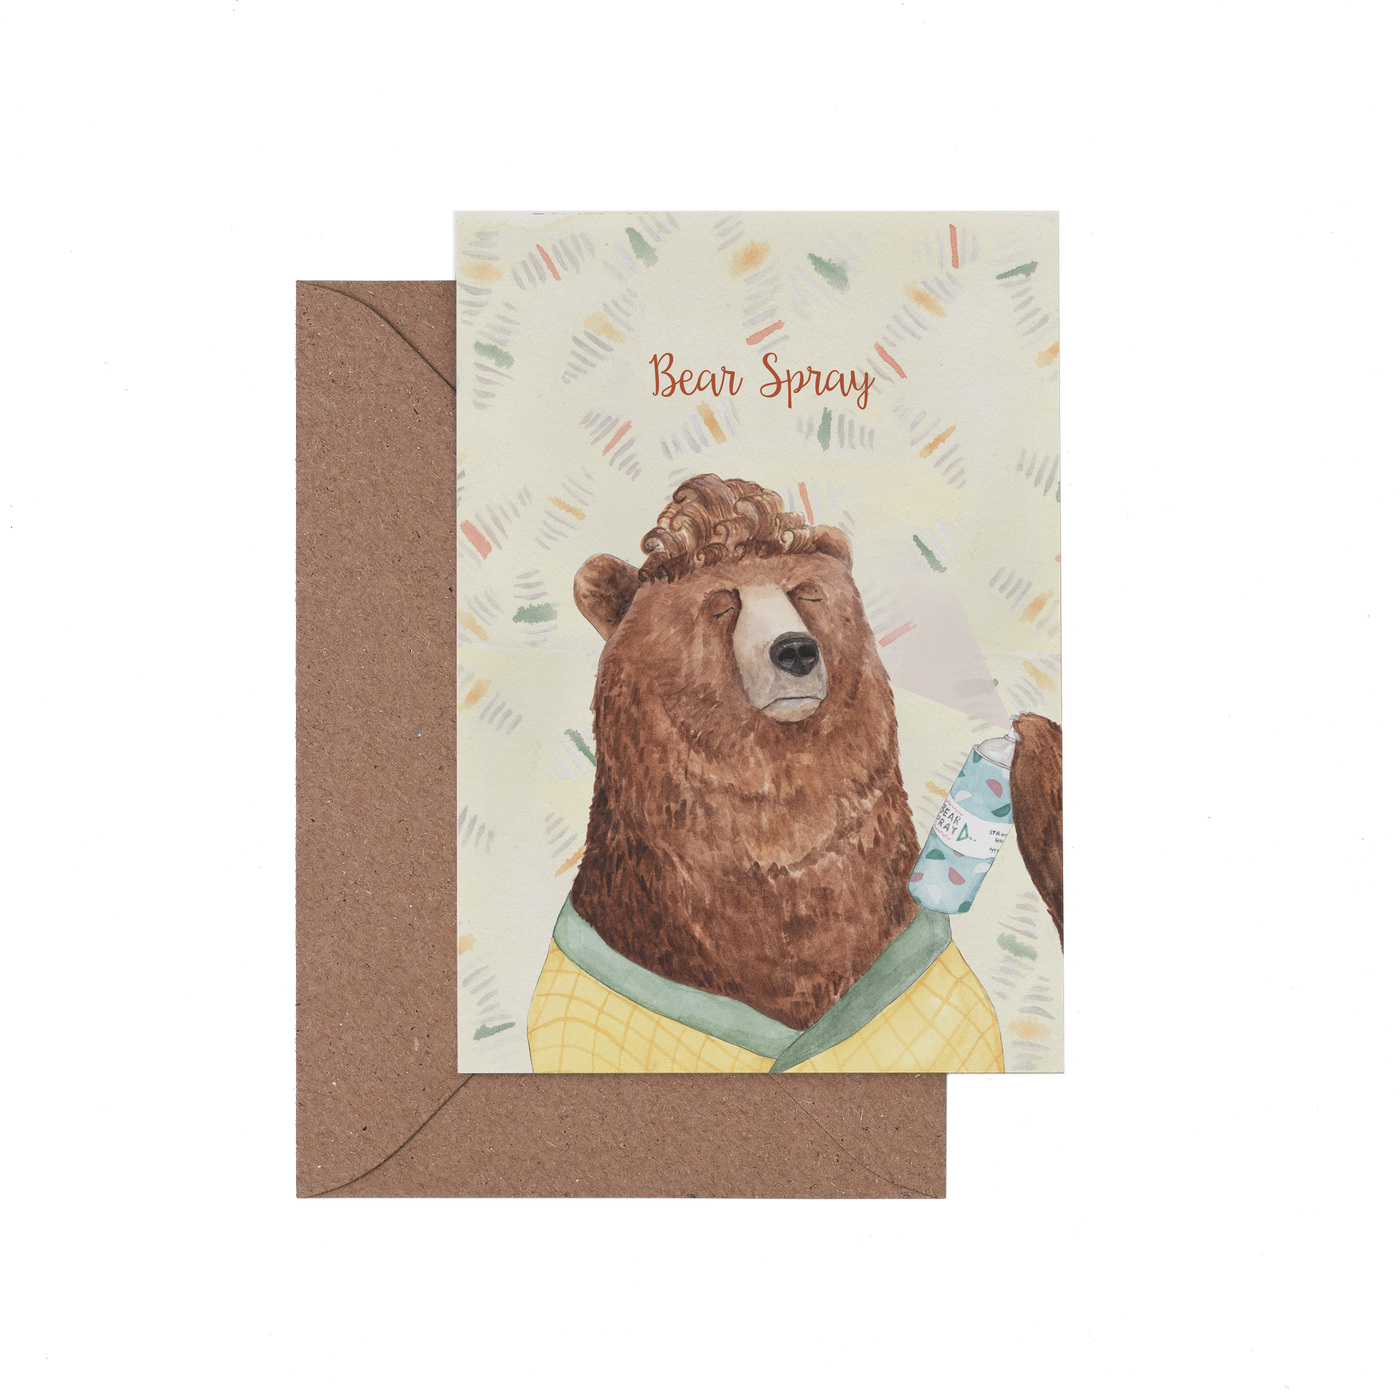 Cut out bear spray card